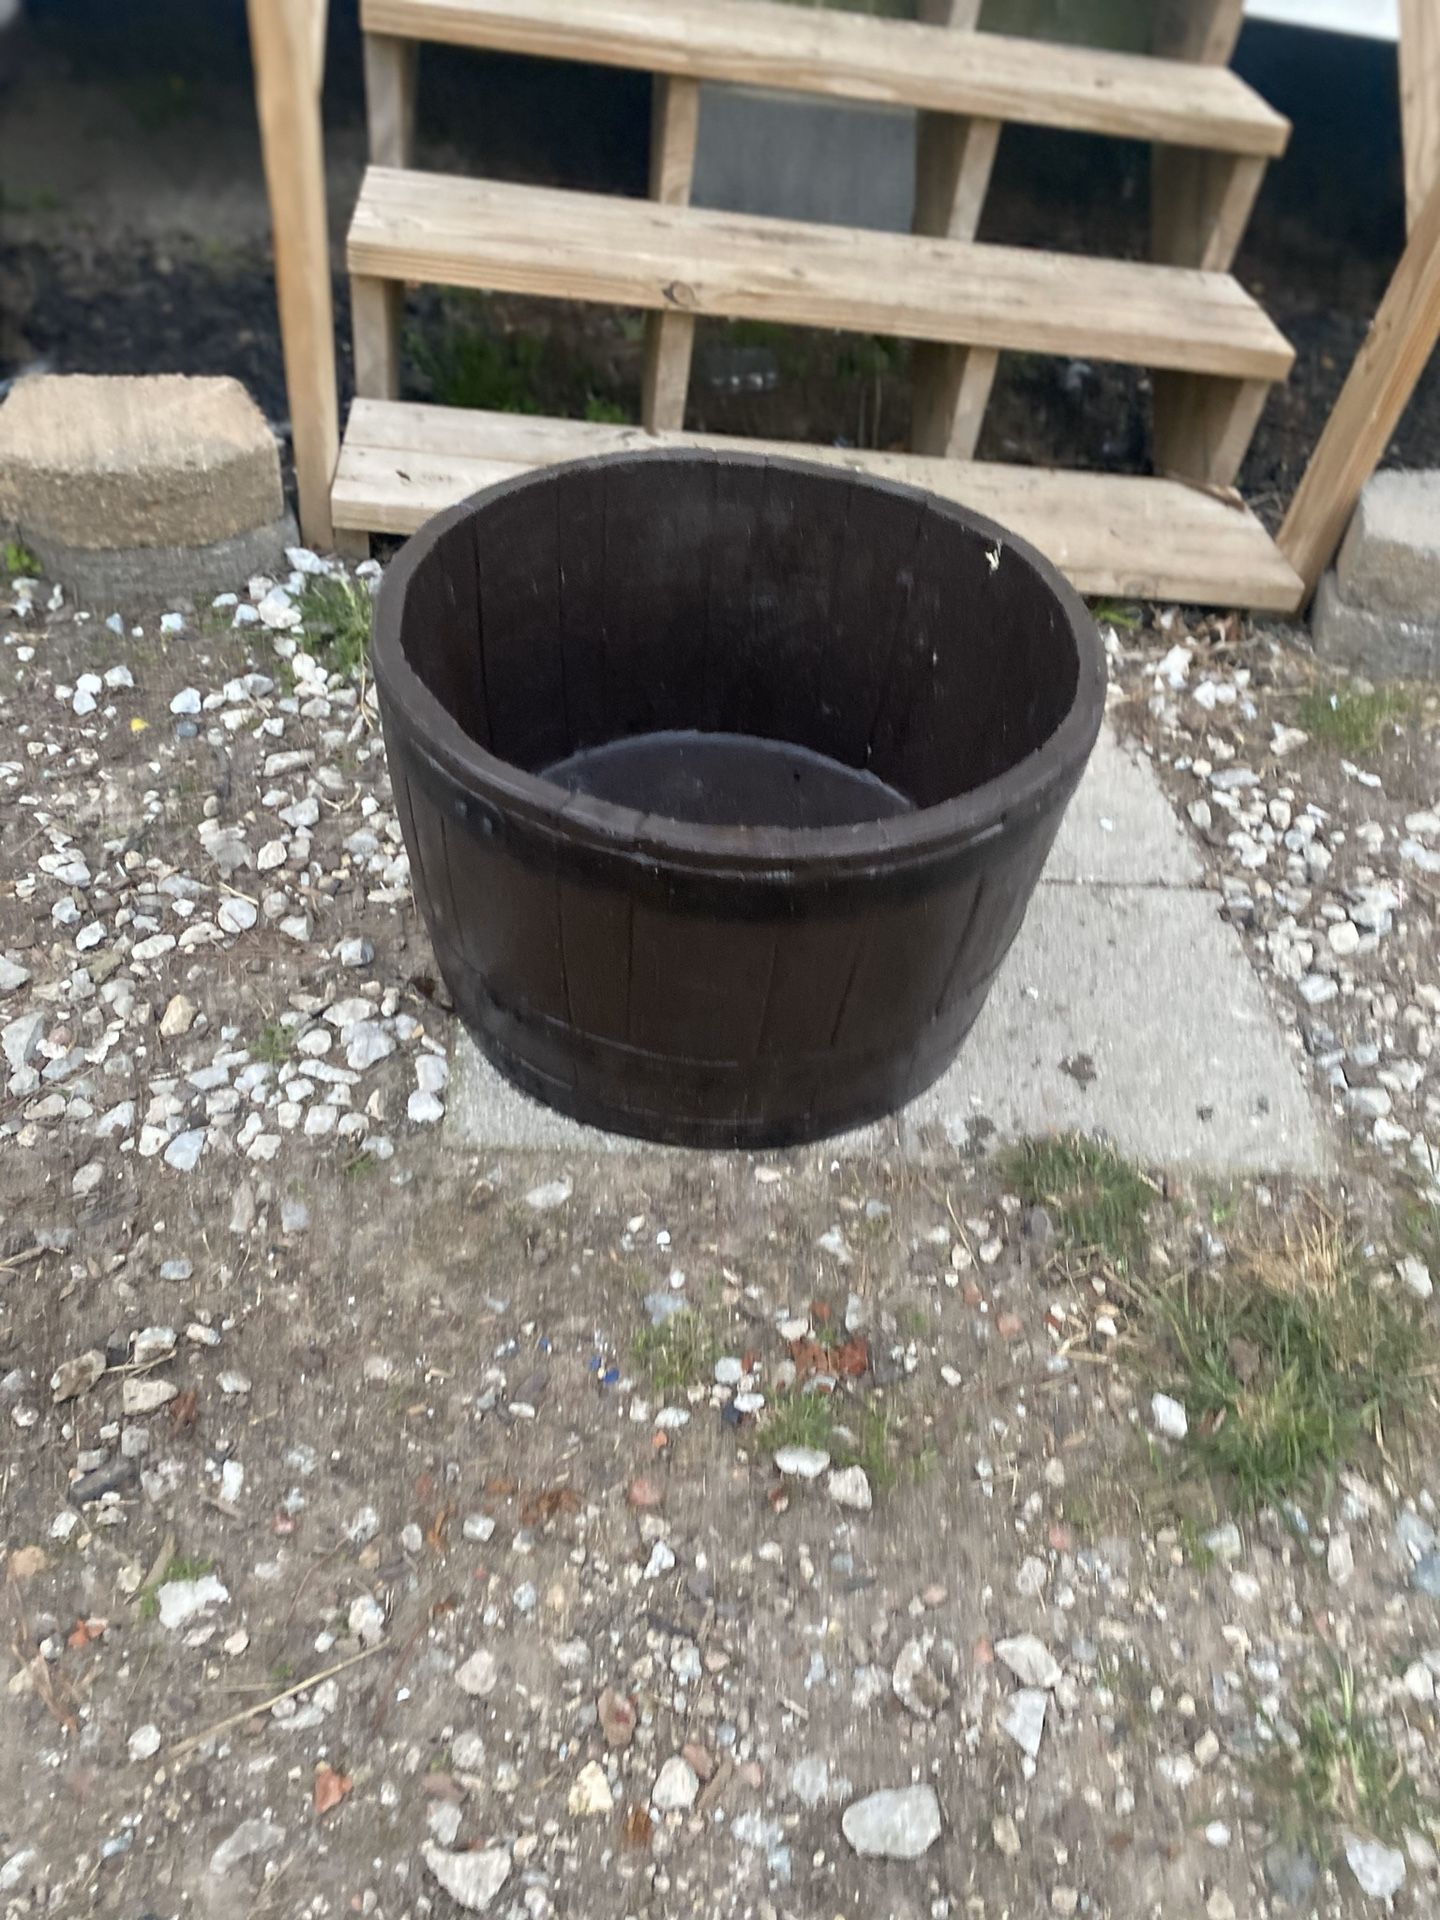 Flower barrel pot